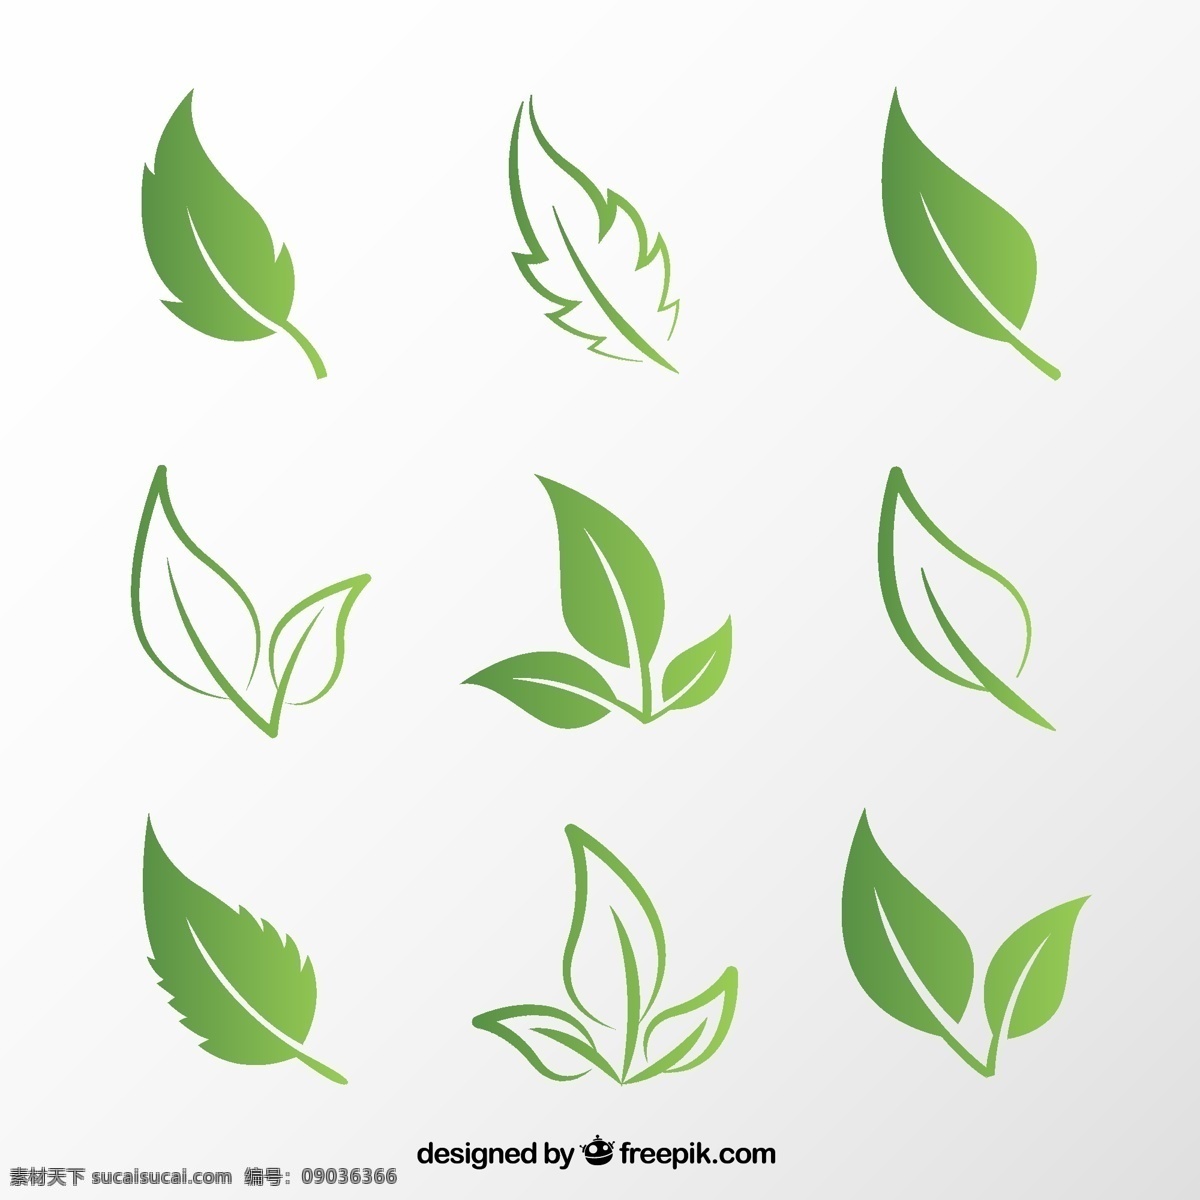 创意 绿叶 矢量 植物 树叶 叶子 矢量图 叶 环保 图标 清晰 绿色